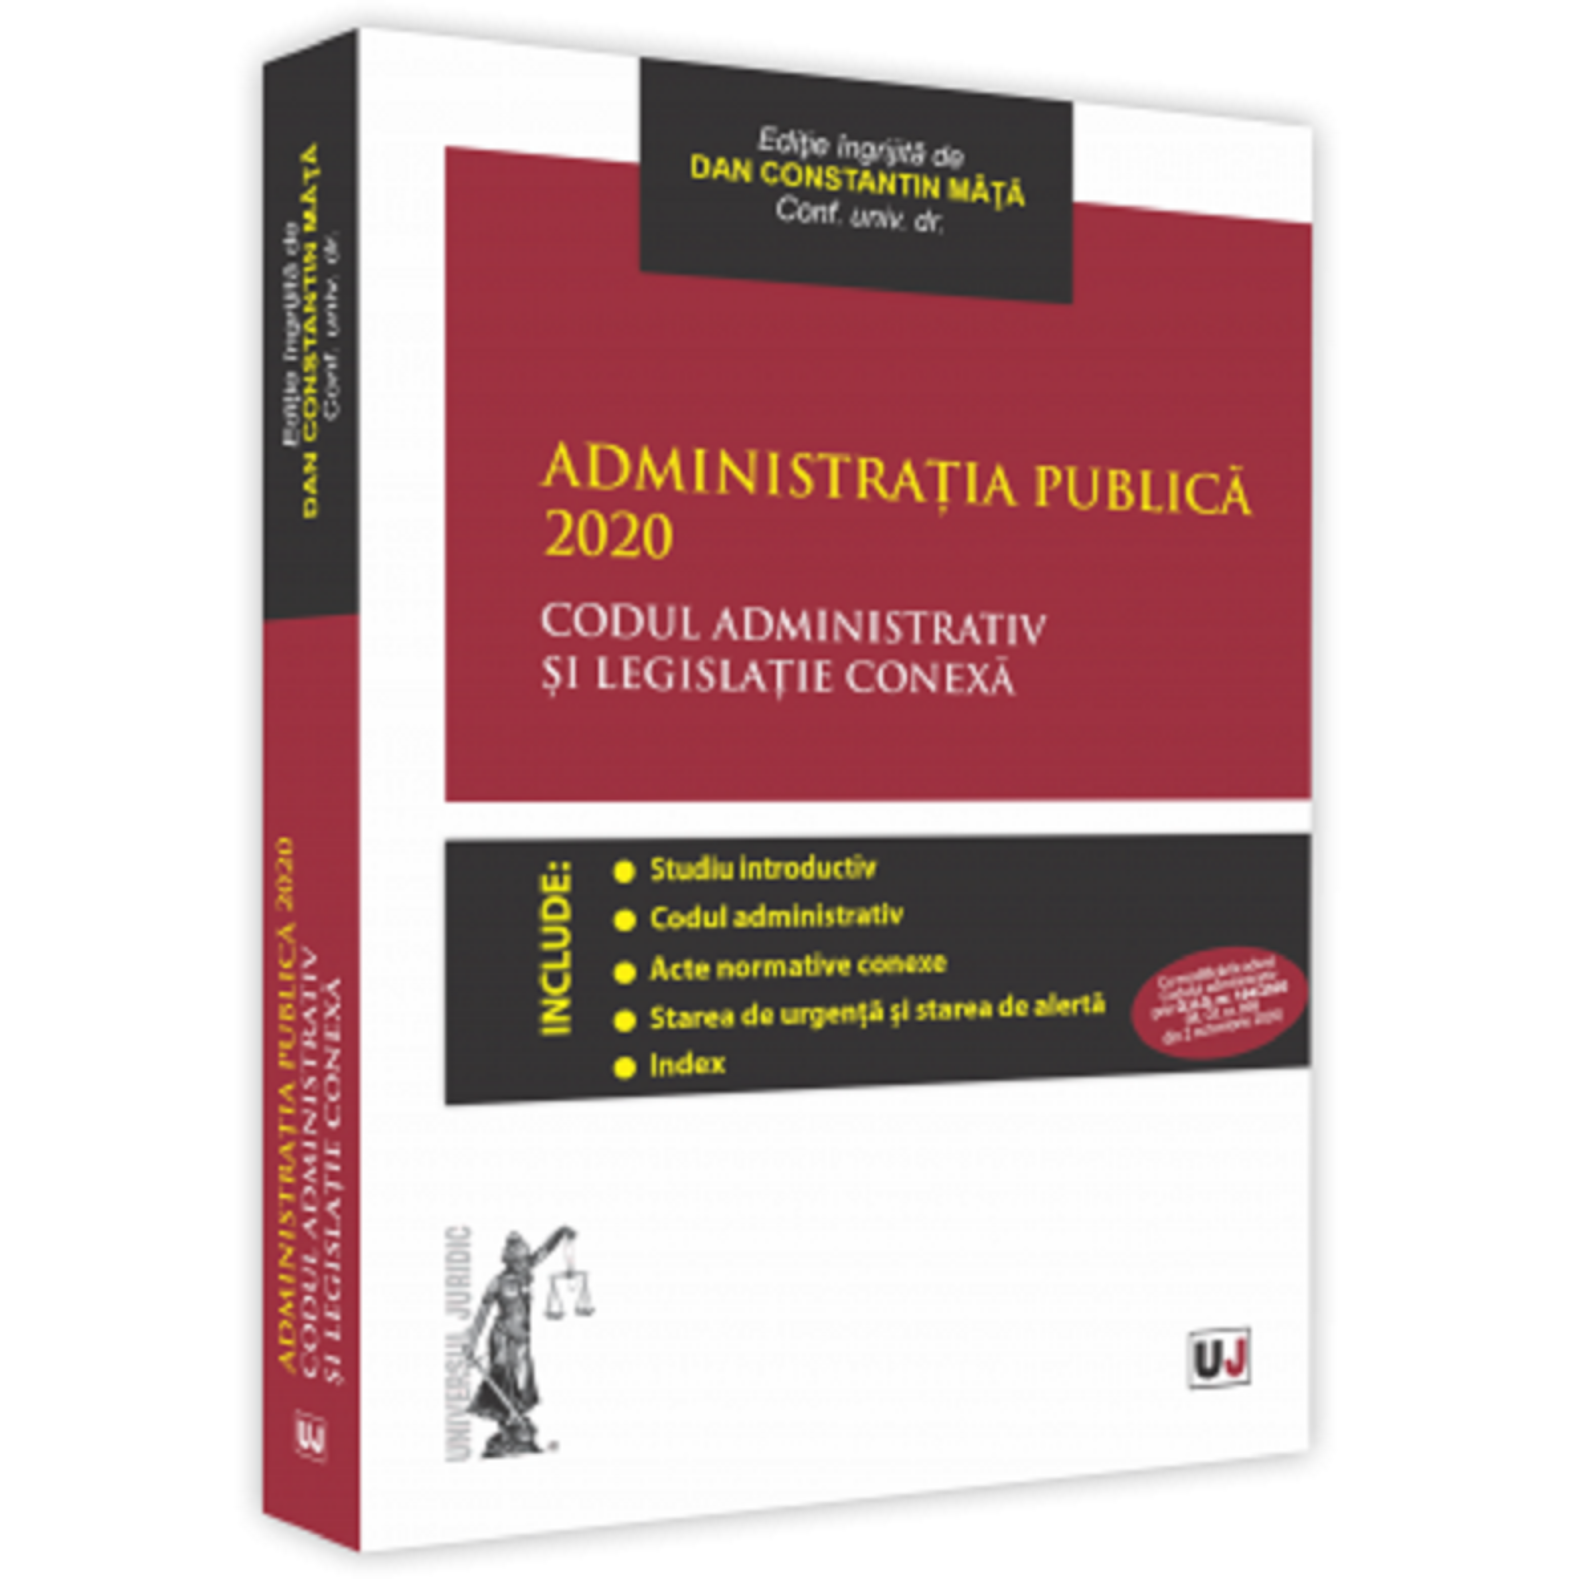 Administratia publica 2020 | Dan Constantin Mata